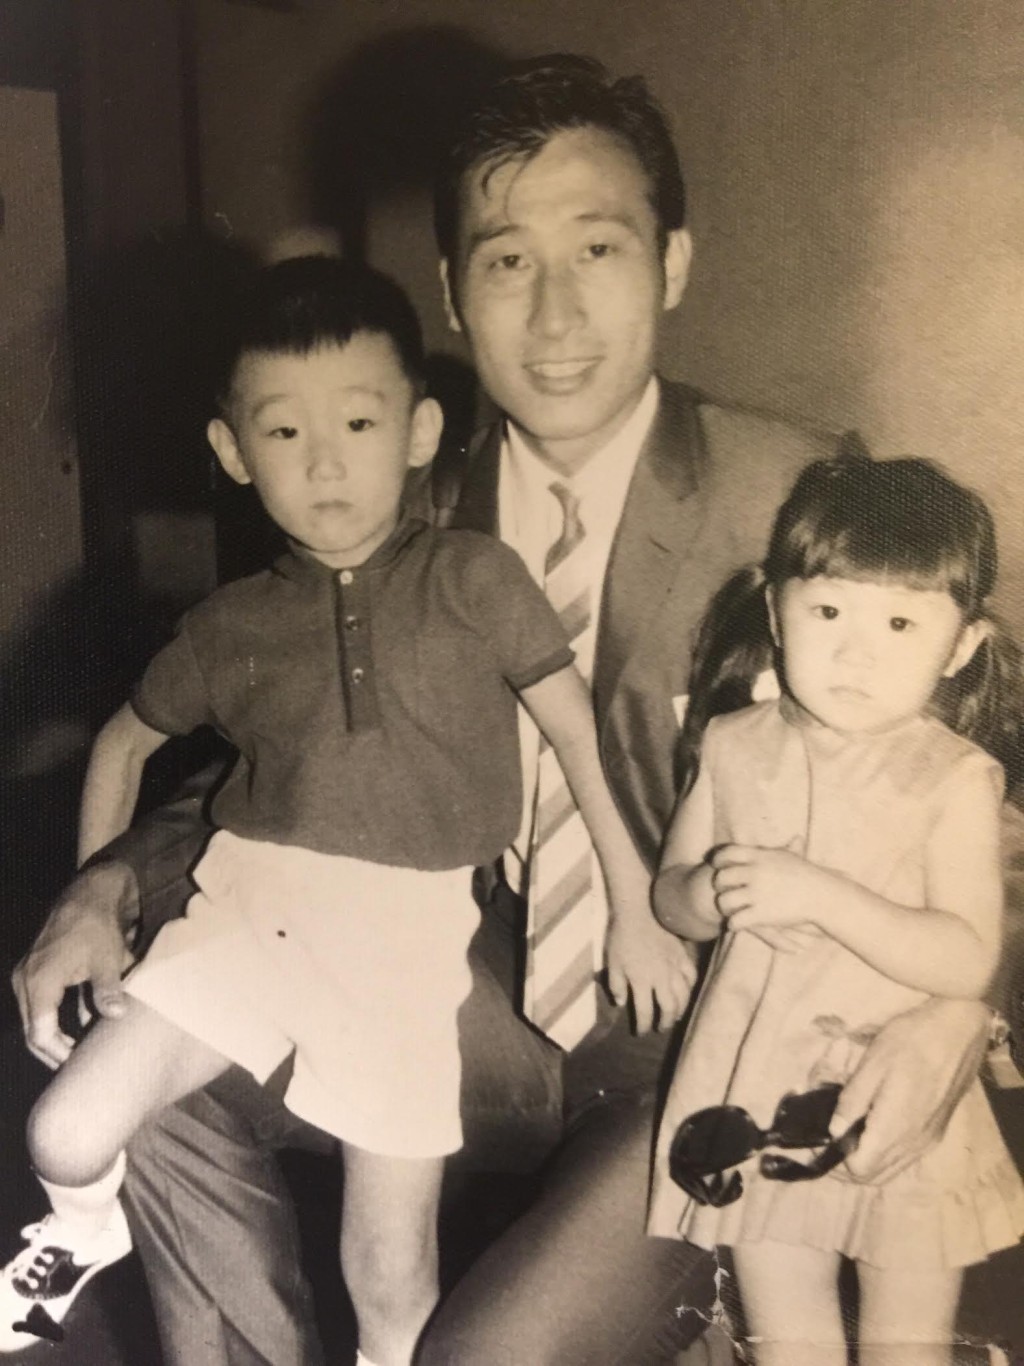 張學潤雖然為形象指導，其實他出身自足球世家，父親更是香港60年代球王張子岱。